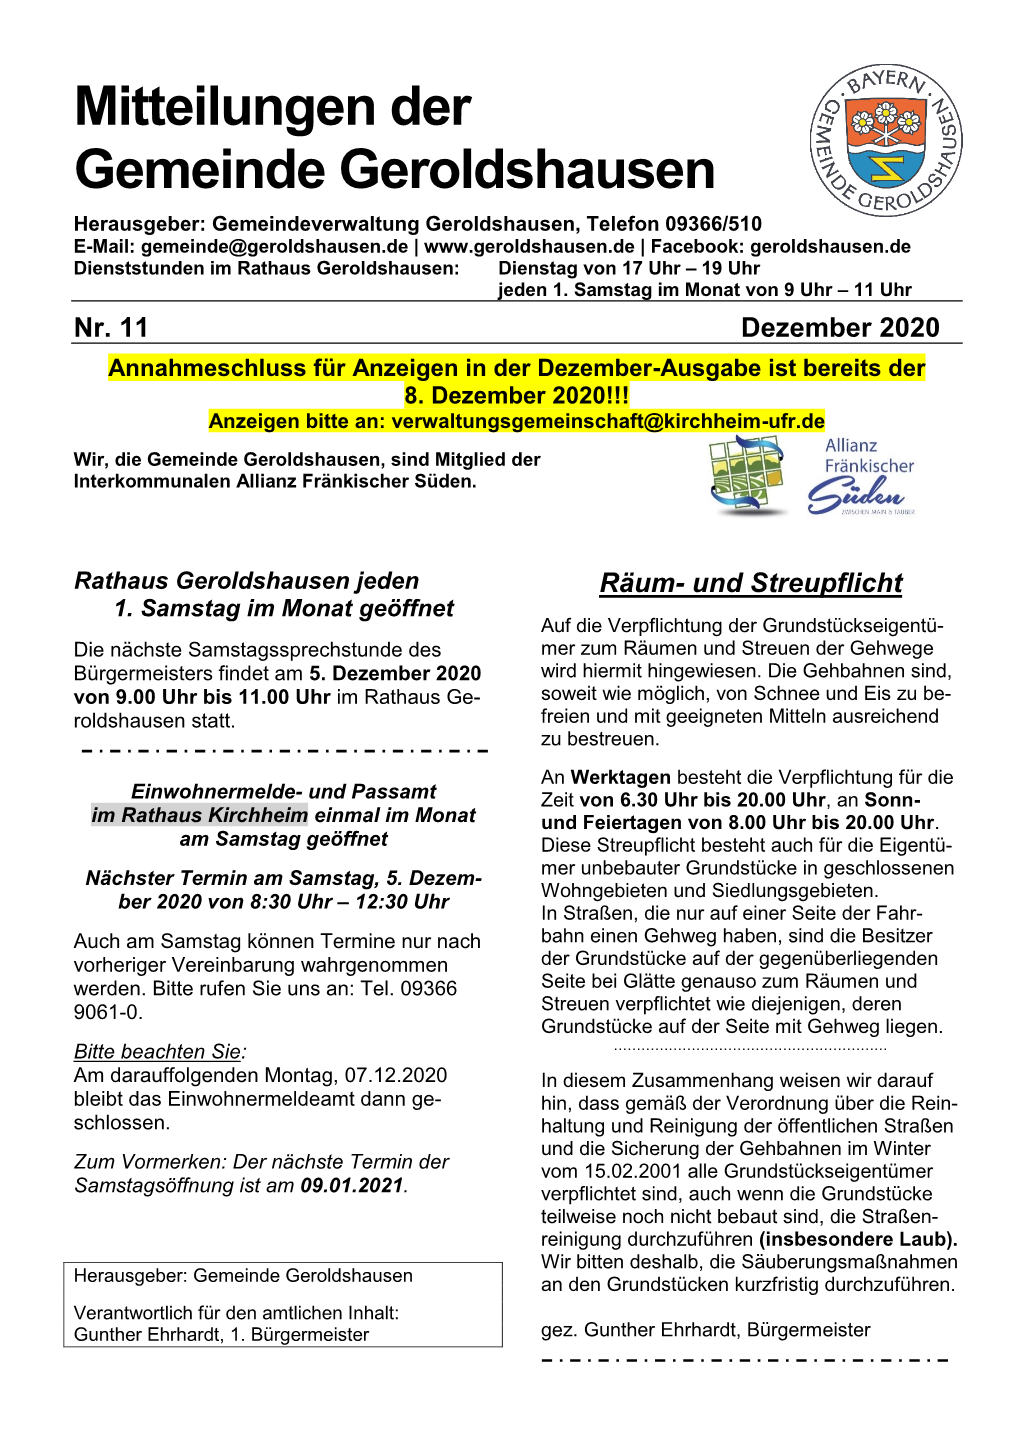 Mitteilungsblatt Der Gemeinde Geroldshausen